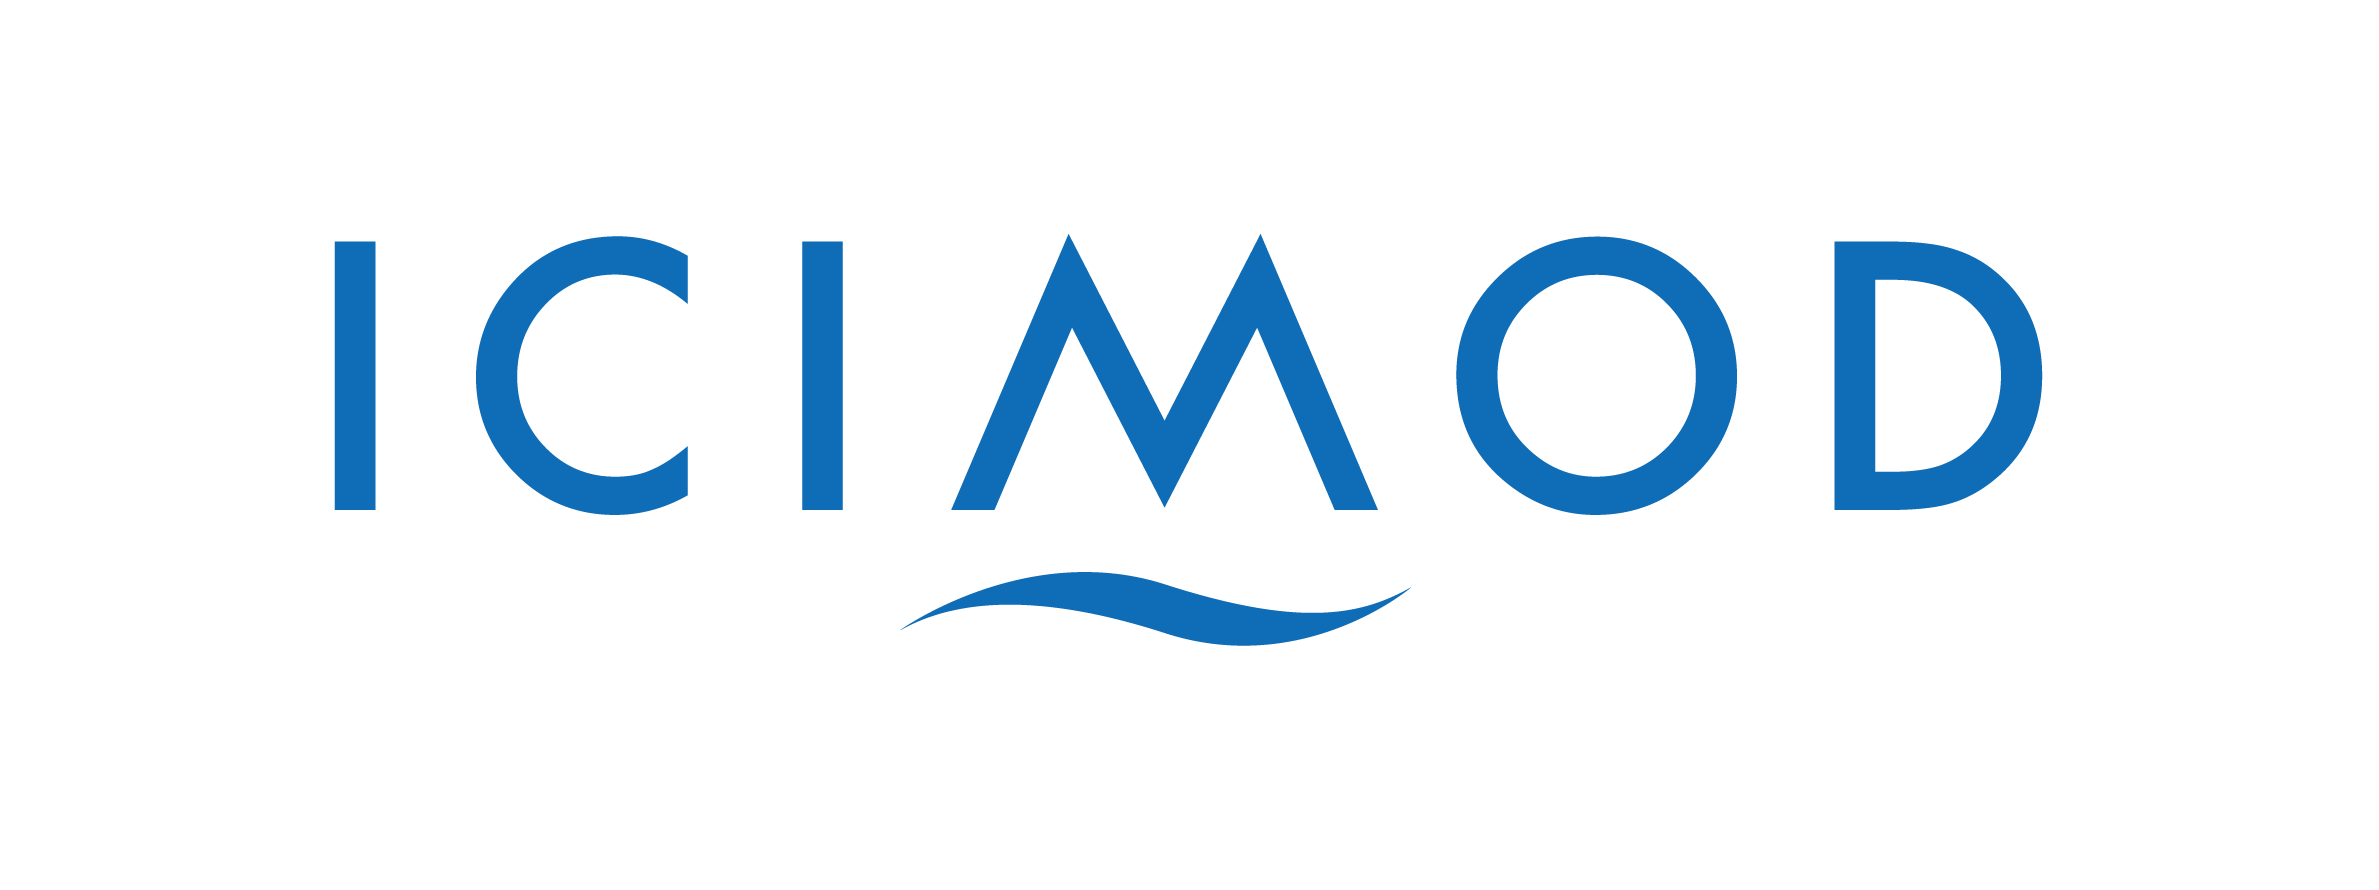 ICIMOD_Master_logo_Blue-01.png